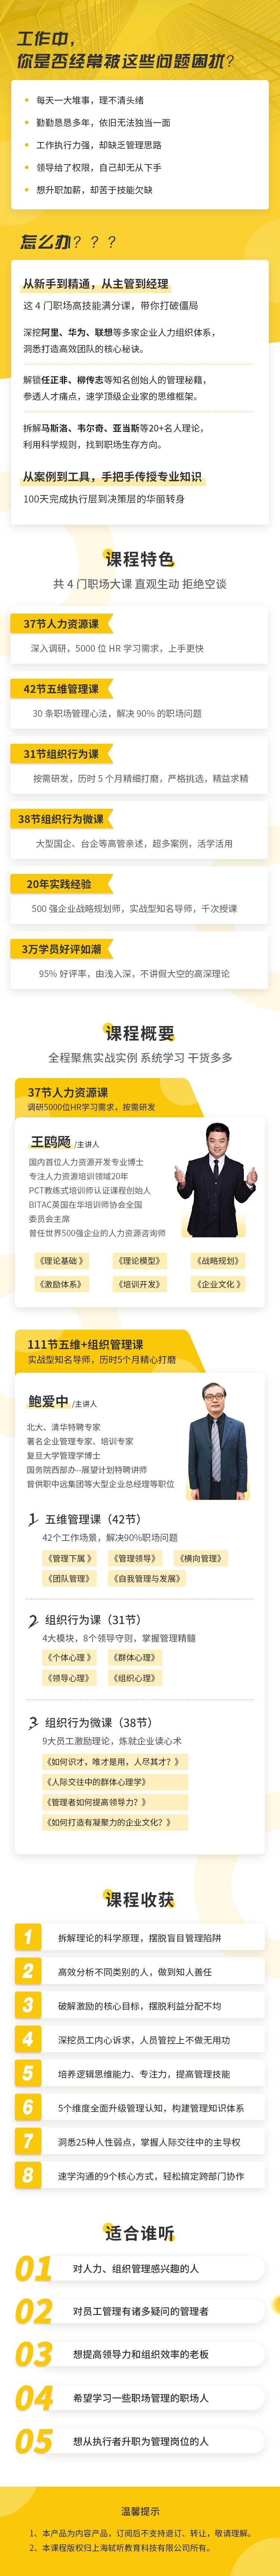 《人力资源MBA》100天进阶为TOP1职场佼佼者-详情页.jpg